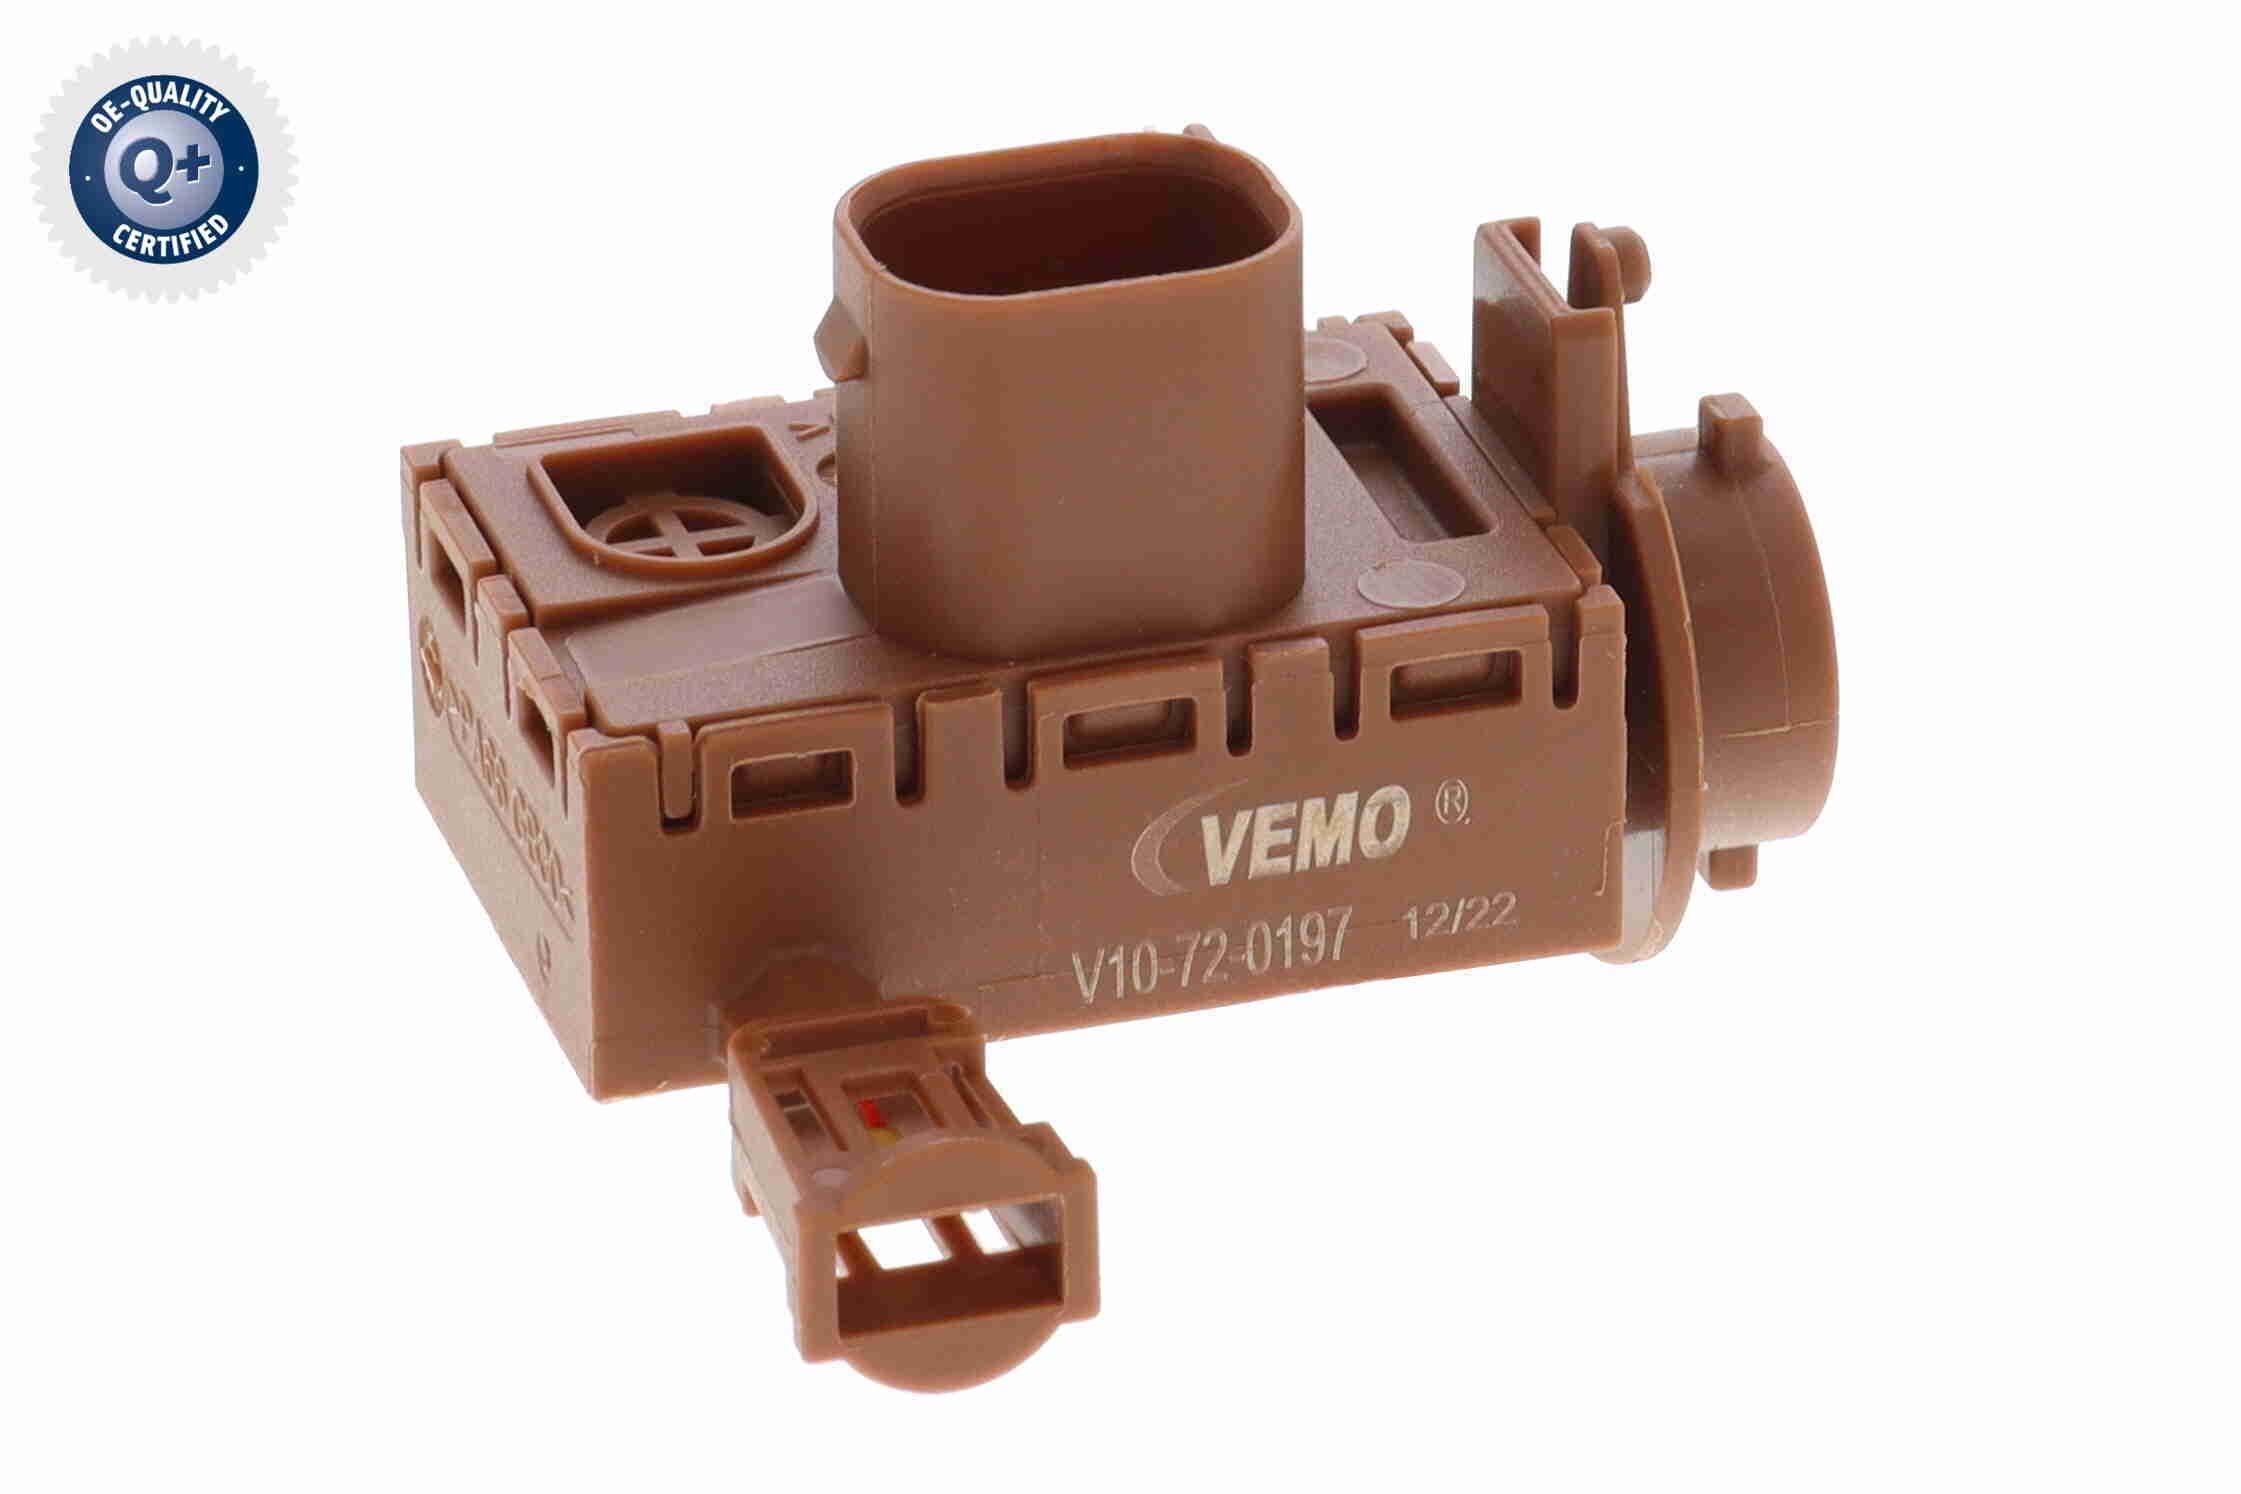 VEMO V10-72-0197 FORD Air quality sensor in original quality